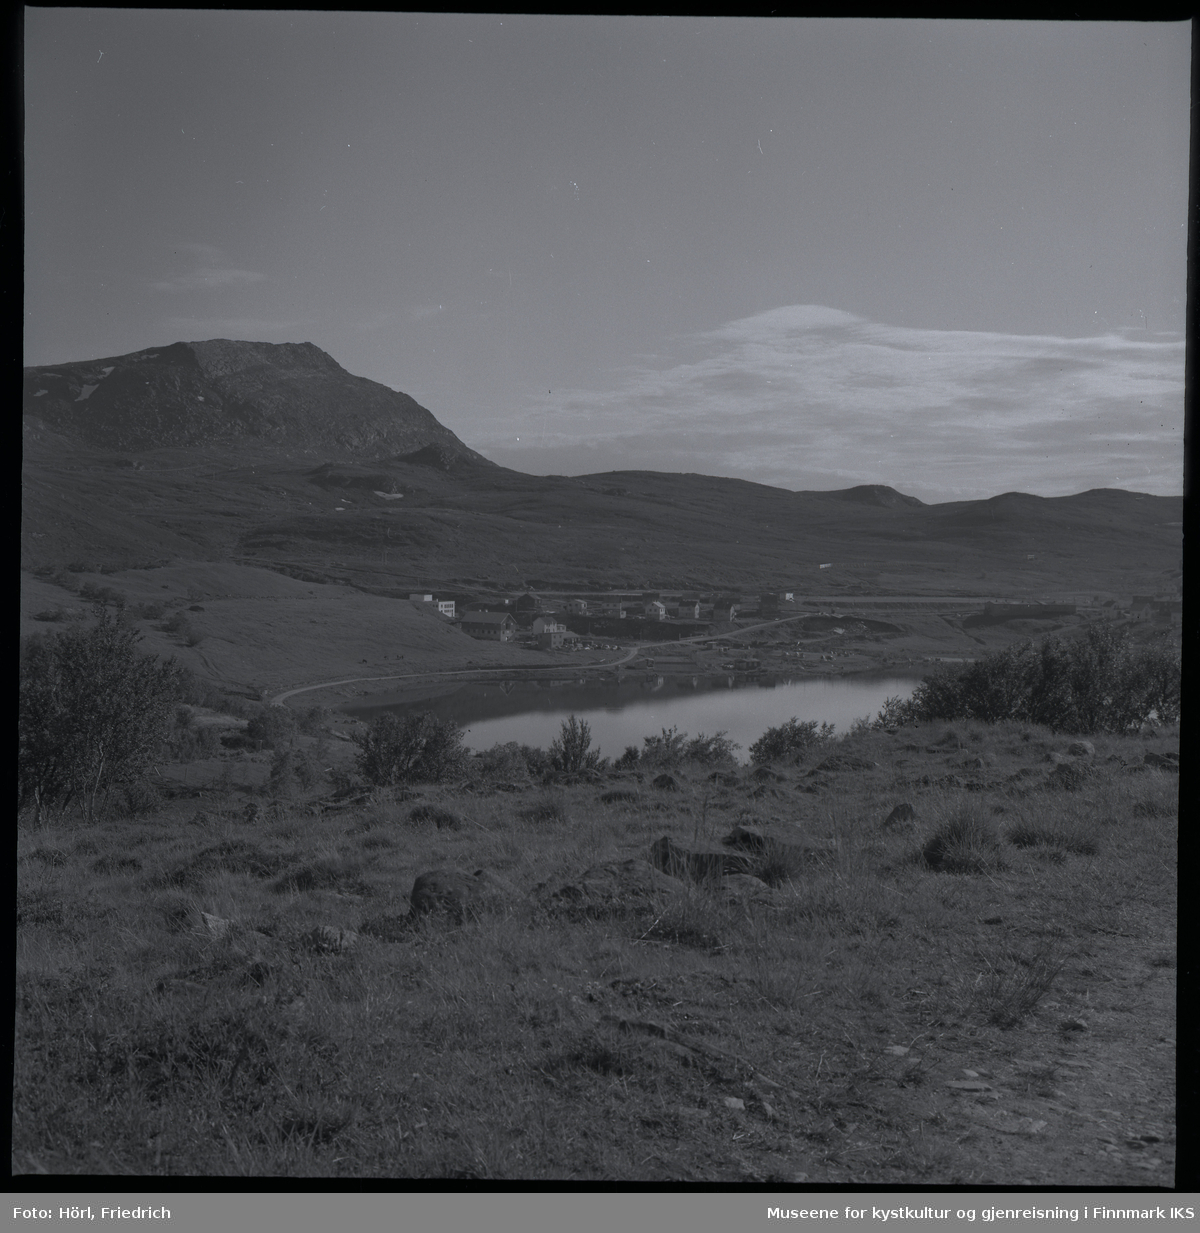 Storvannet i Hammerfest sett fra Kallandskogen. I midten av bildet ser man bebyggelsen rund munningen av elva, et området som kalles for "Tunnelbakken" og der elverket ligger. I bakgrunnen til venstre ser man Tyven fjellet.